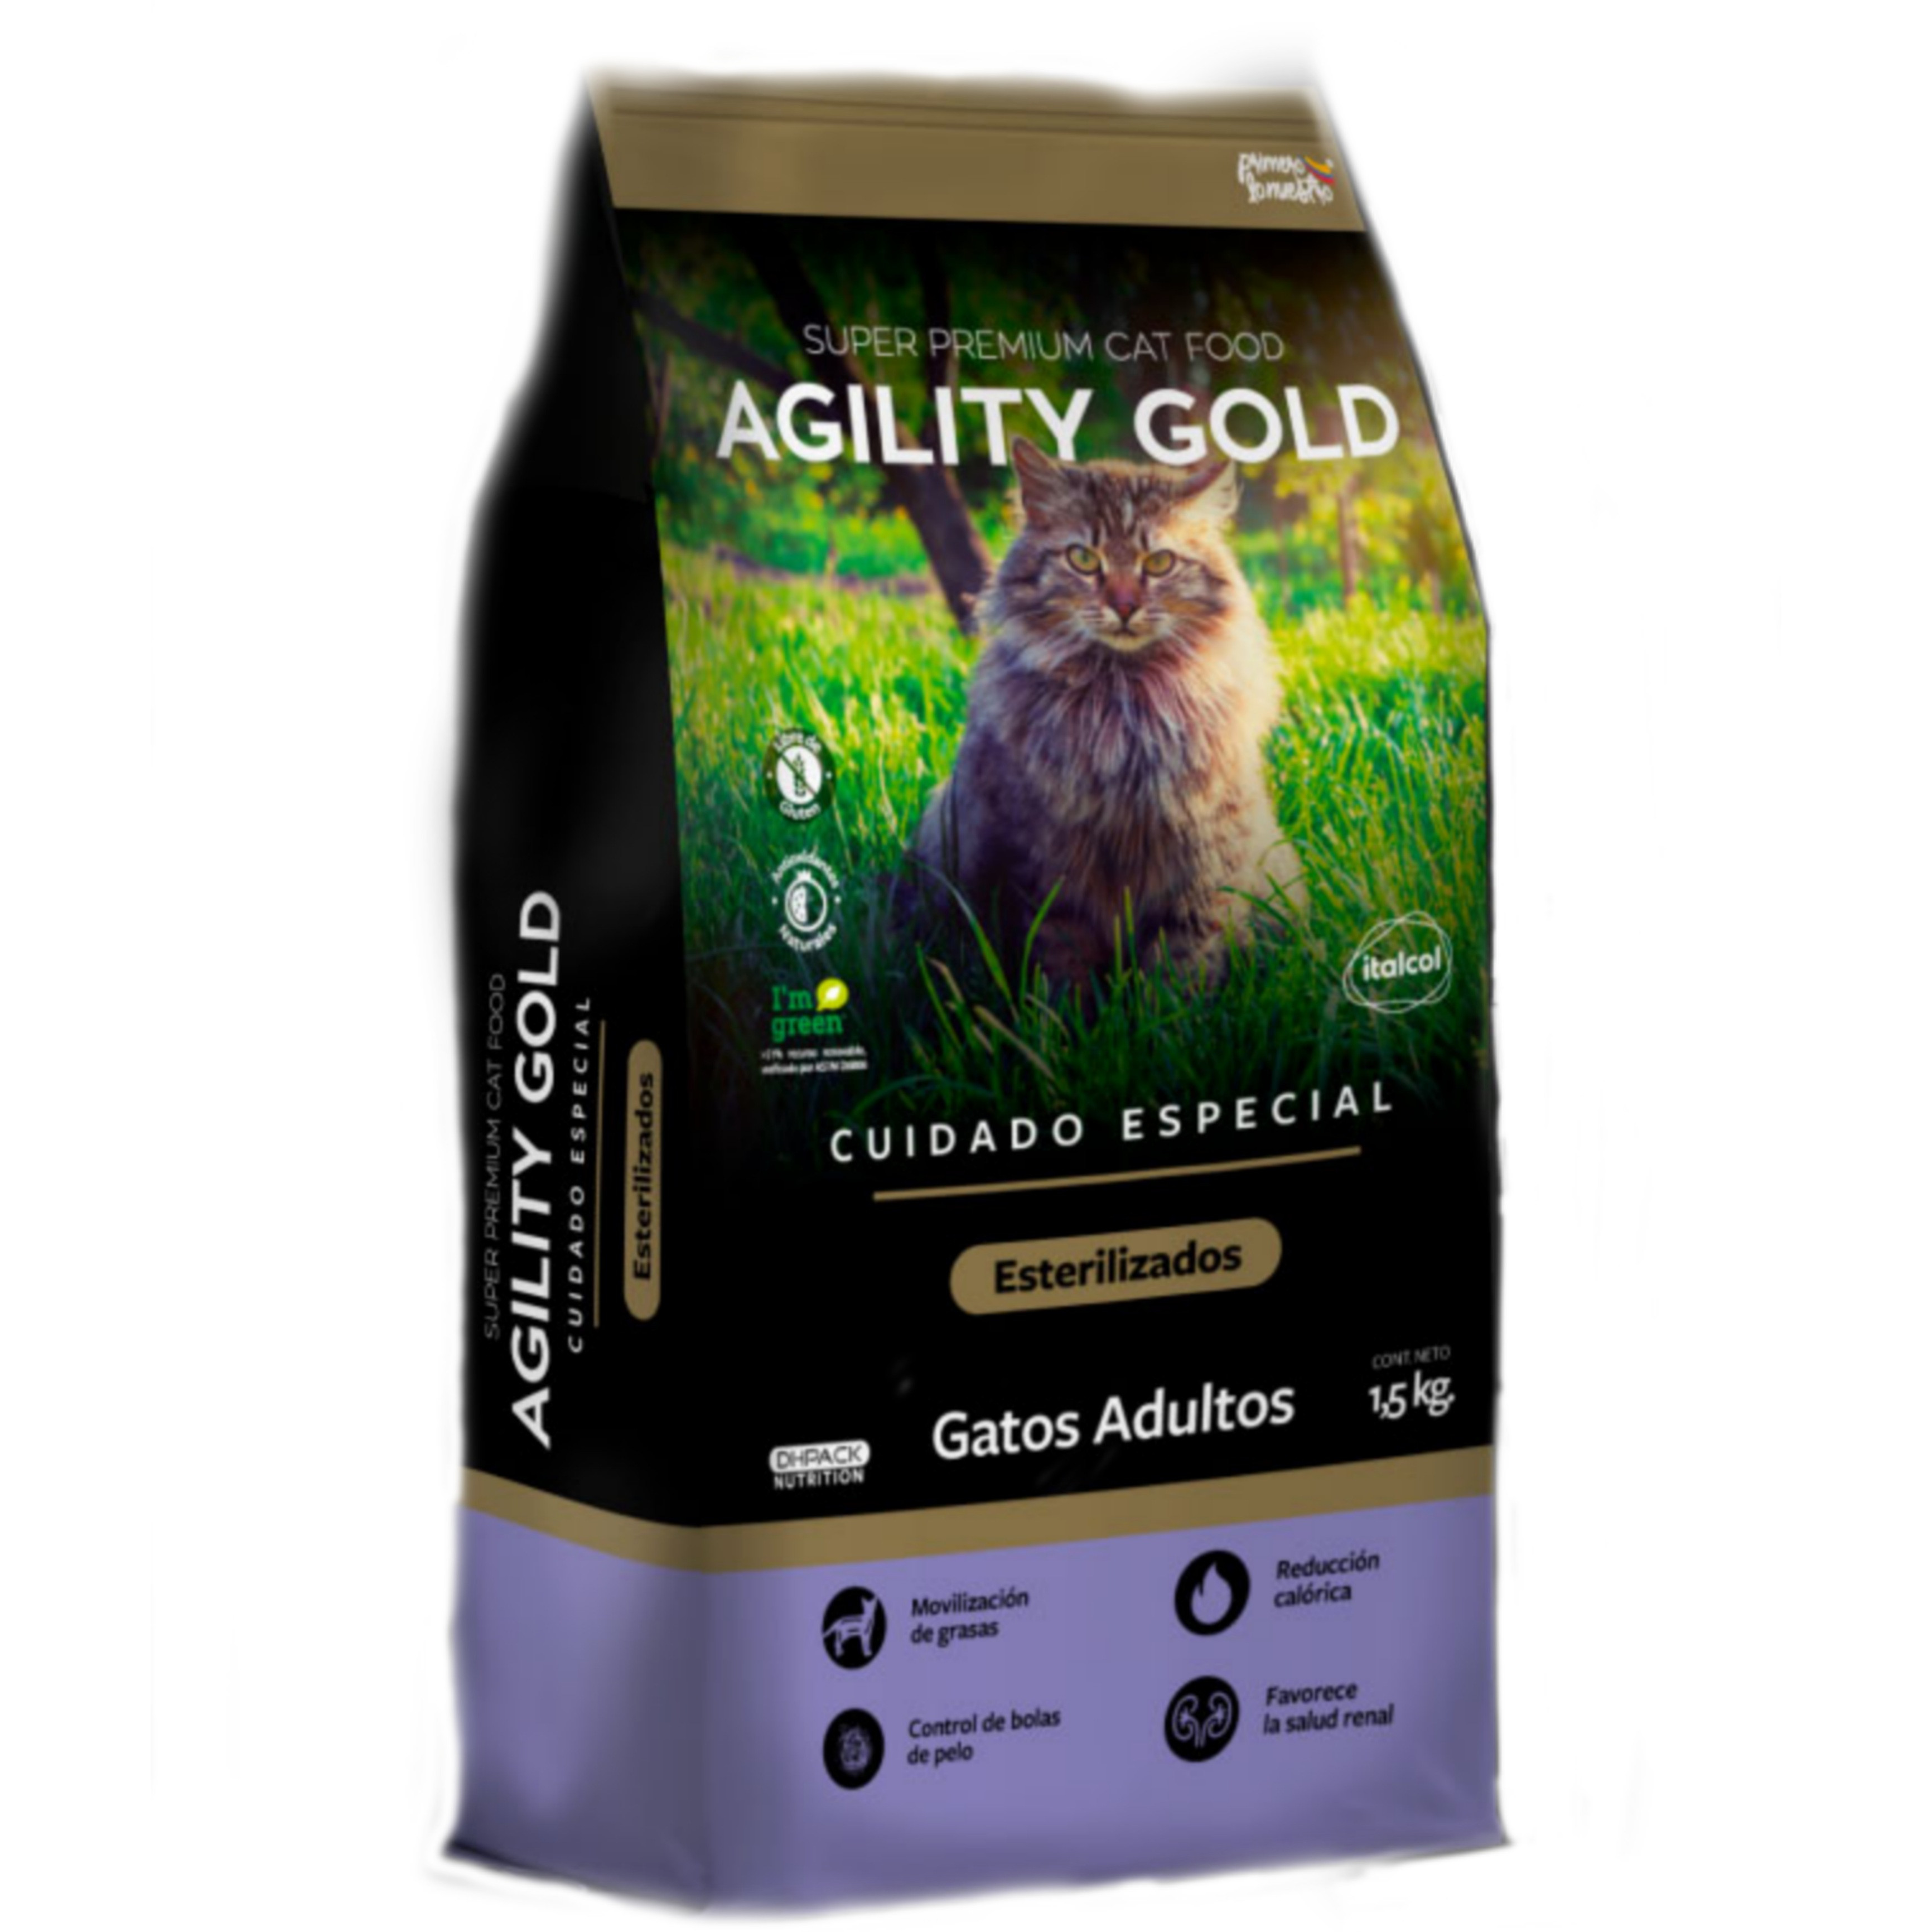 Imagen AGILITY GOLD Cuidado Especial Gatos Esterilizados 1,5kg 1